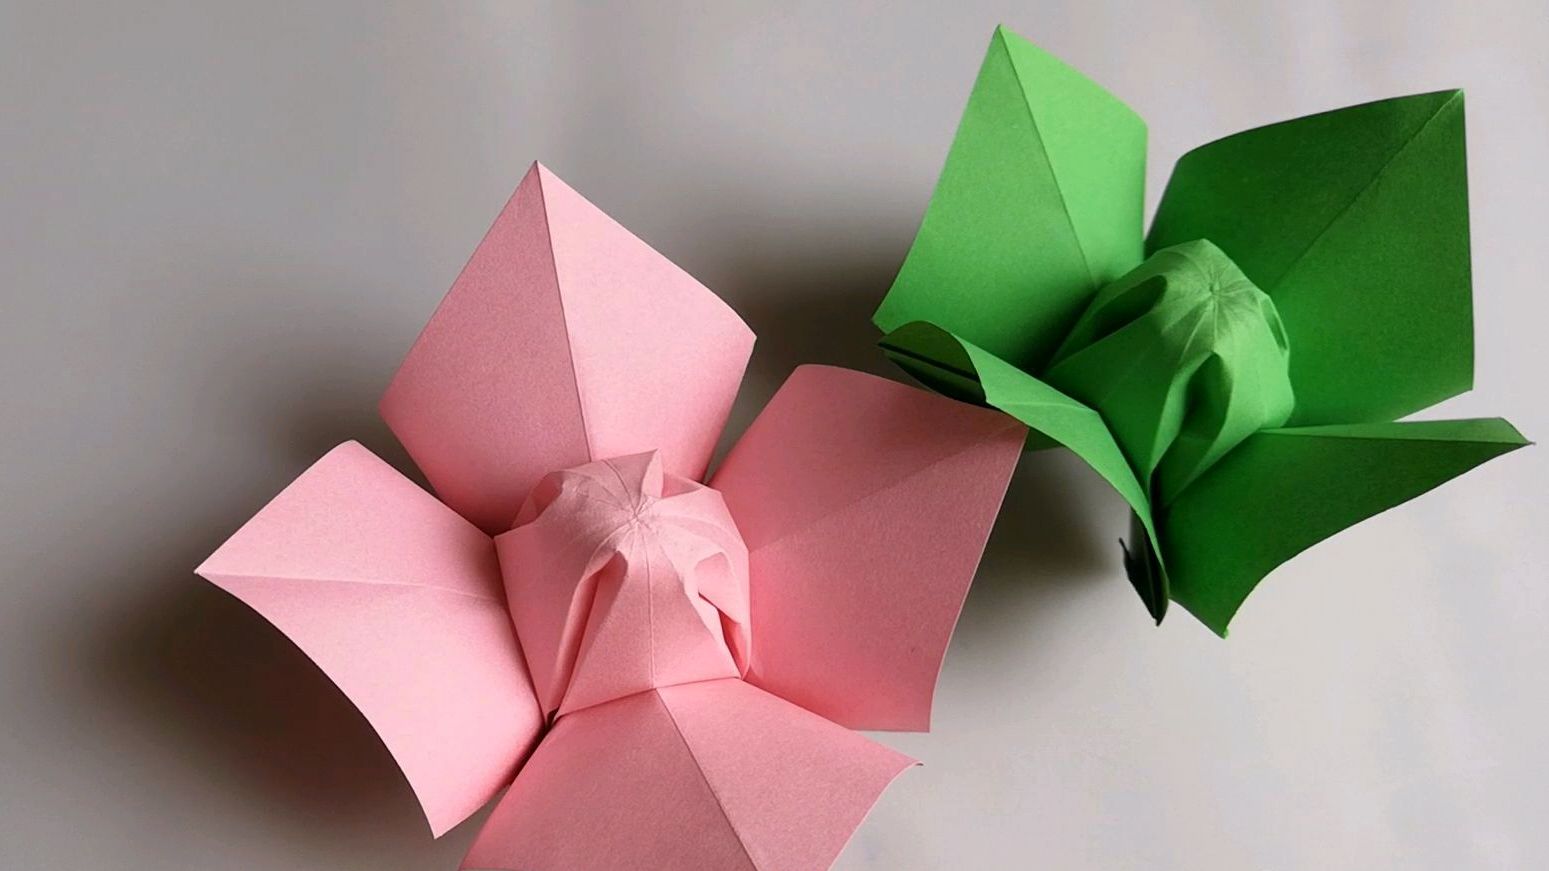 1折纸花:简单易学的折纸花,非常适合手工初学者的折纸教程  03:50